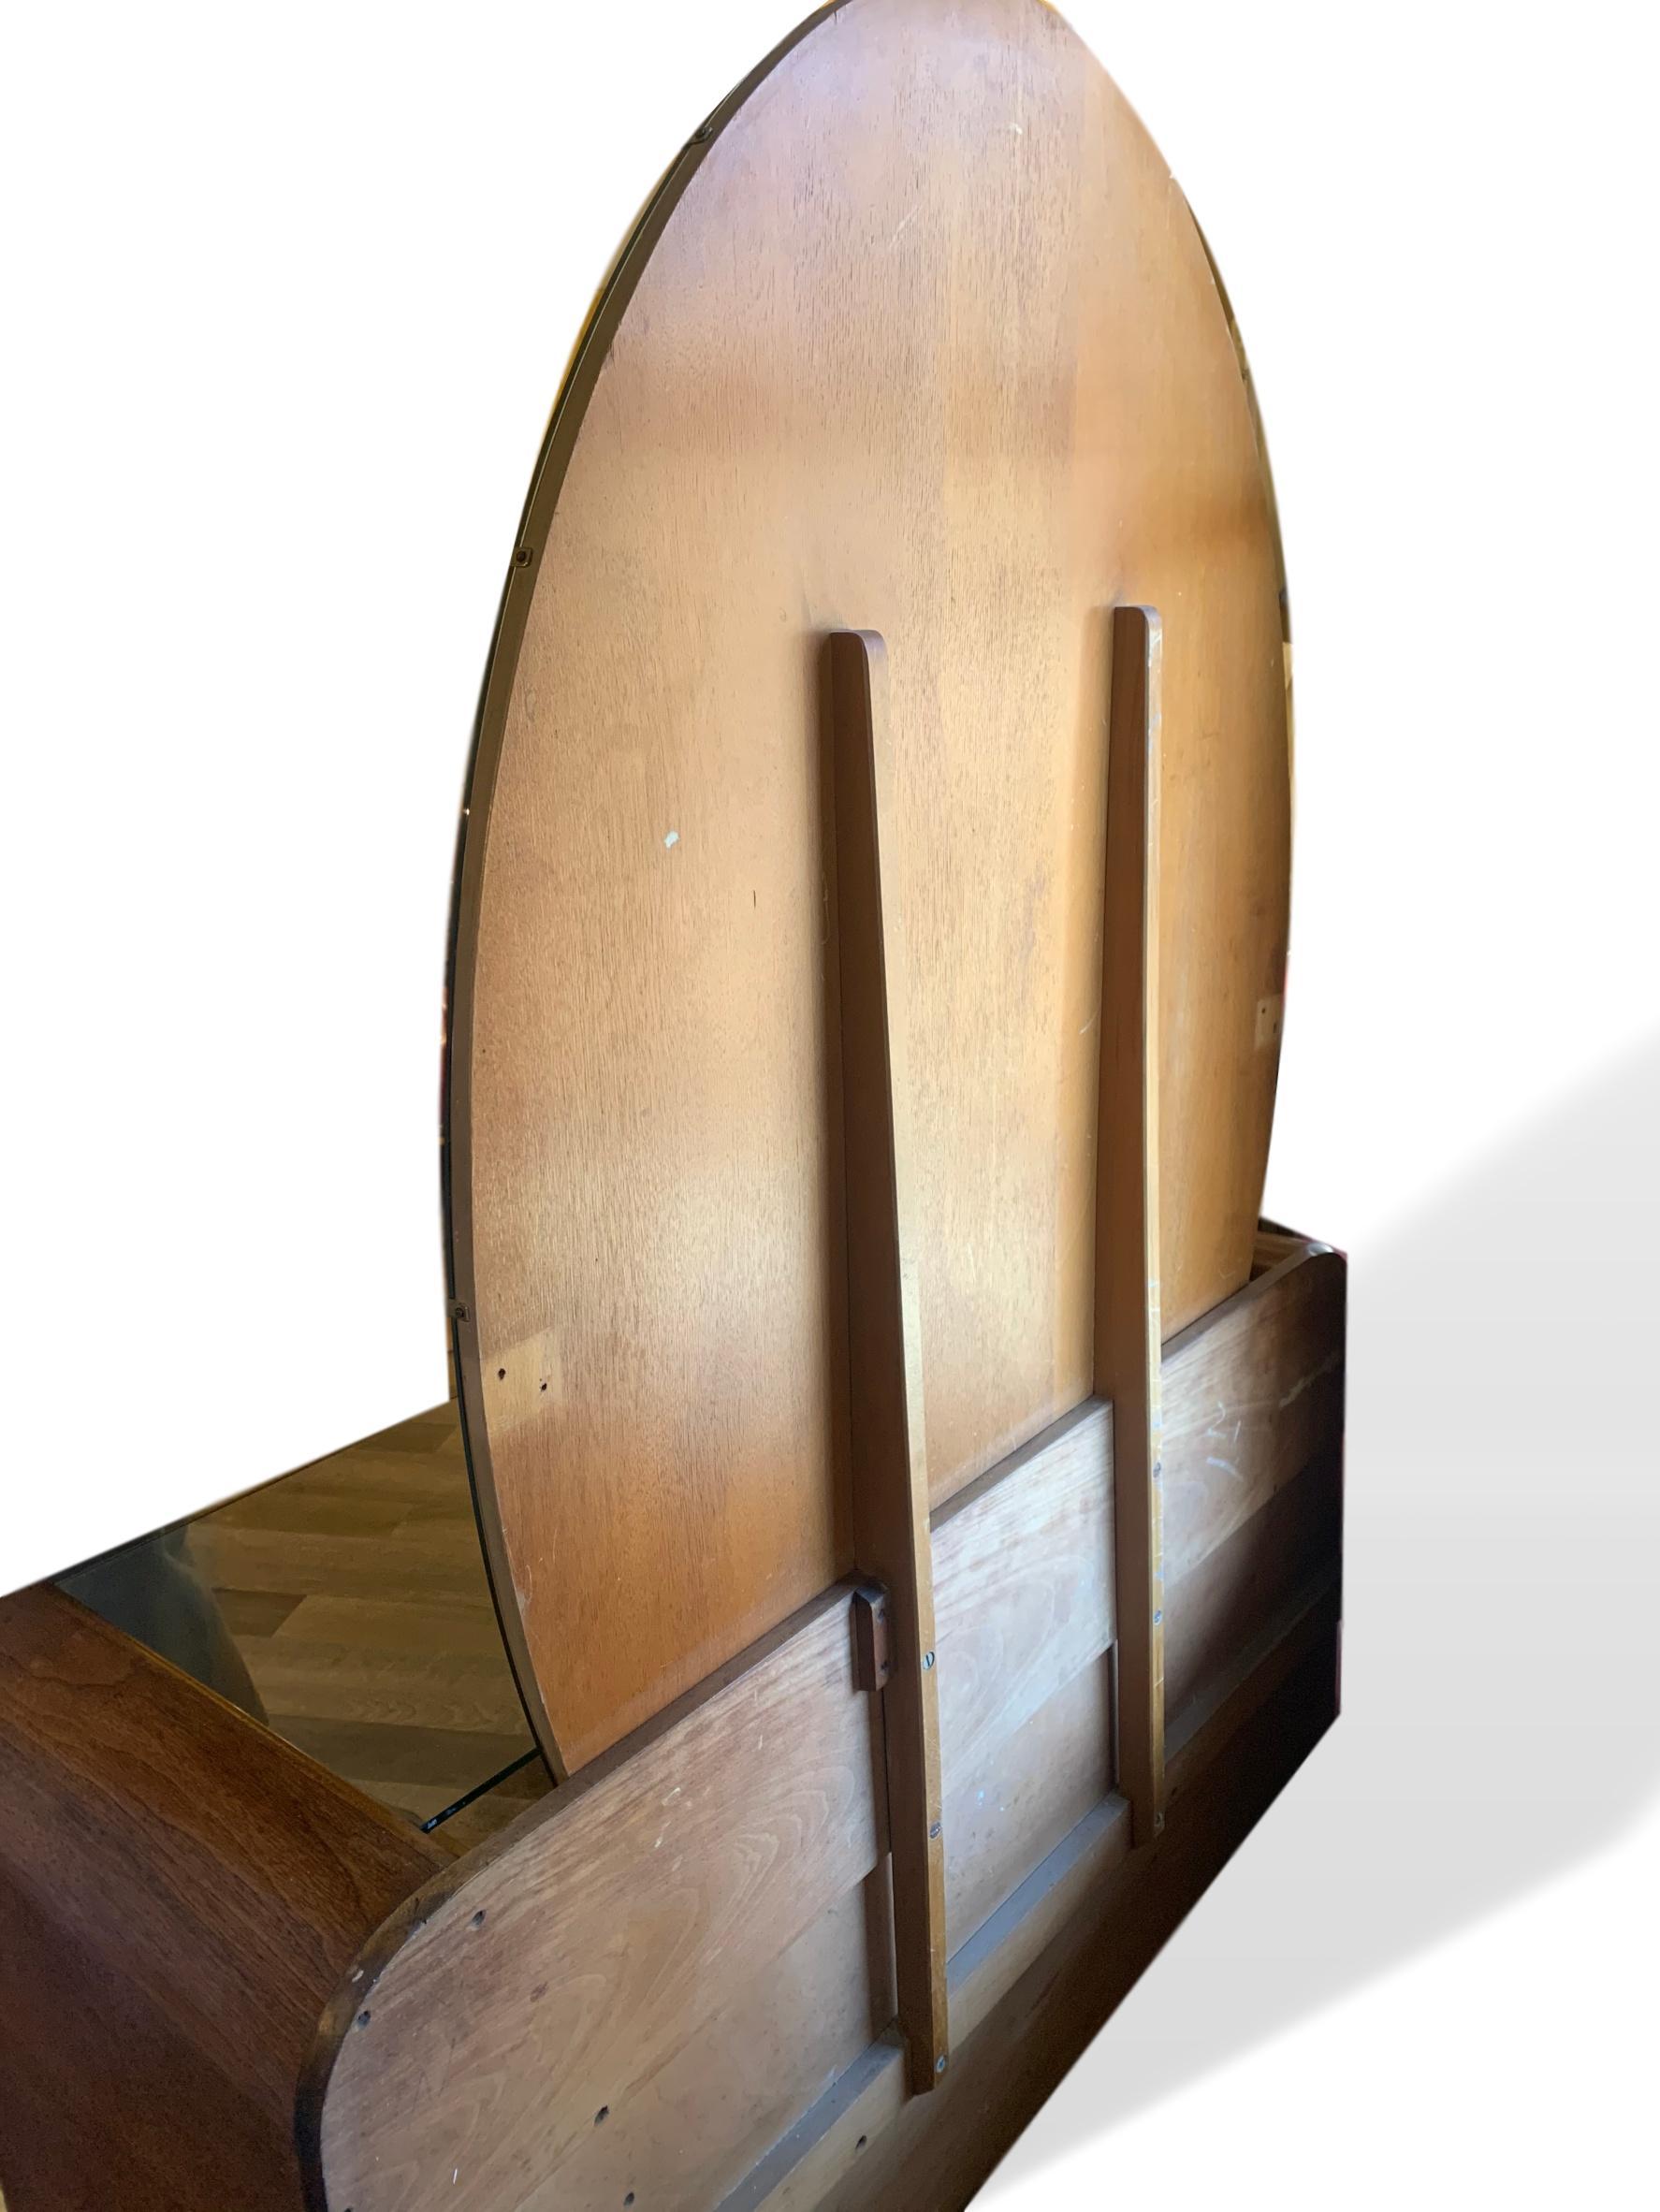 Verspiegelter Art Deco-Waschtisch mit Schubladen von English Company EG Furniture:: 1940er Jahre (Teakholz)